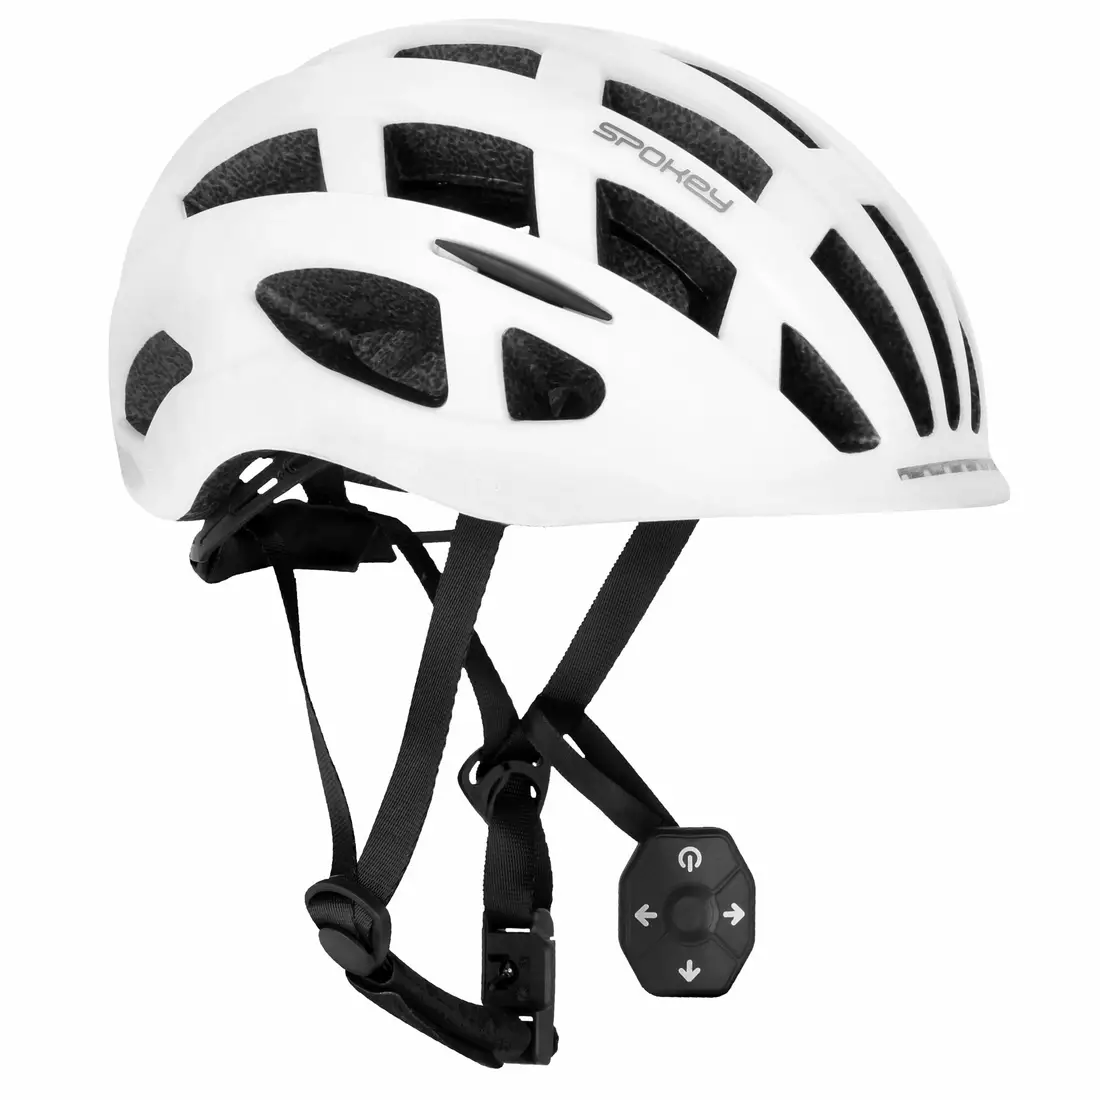 SPOKEY POINTER PRO cyklistická přilba s blinkry 55-58 cm 